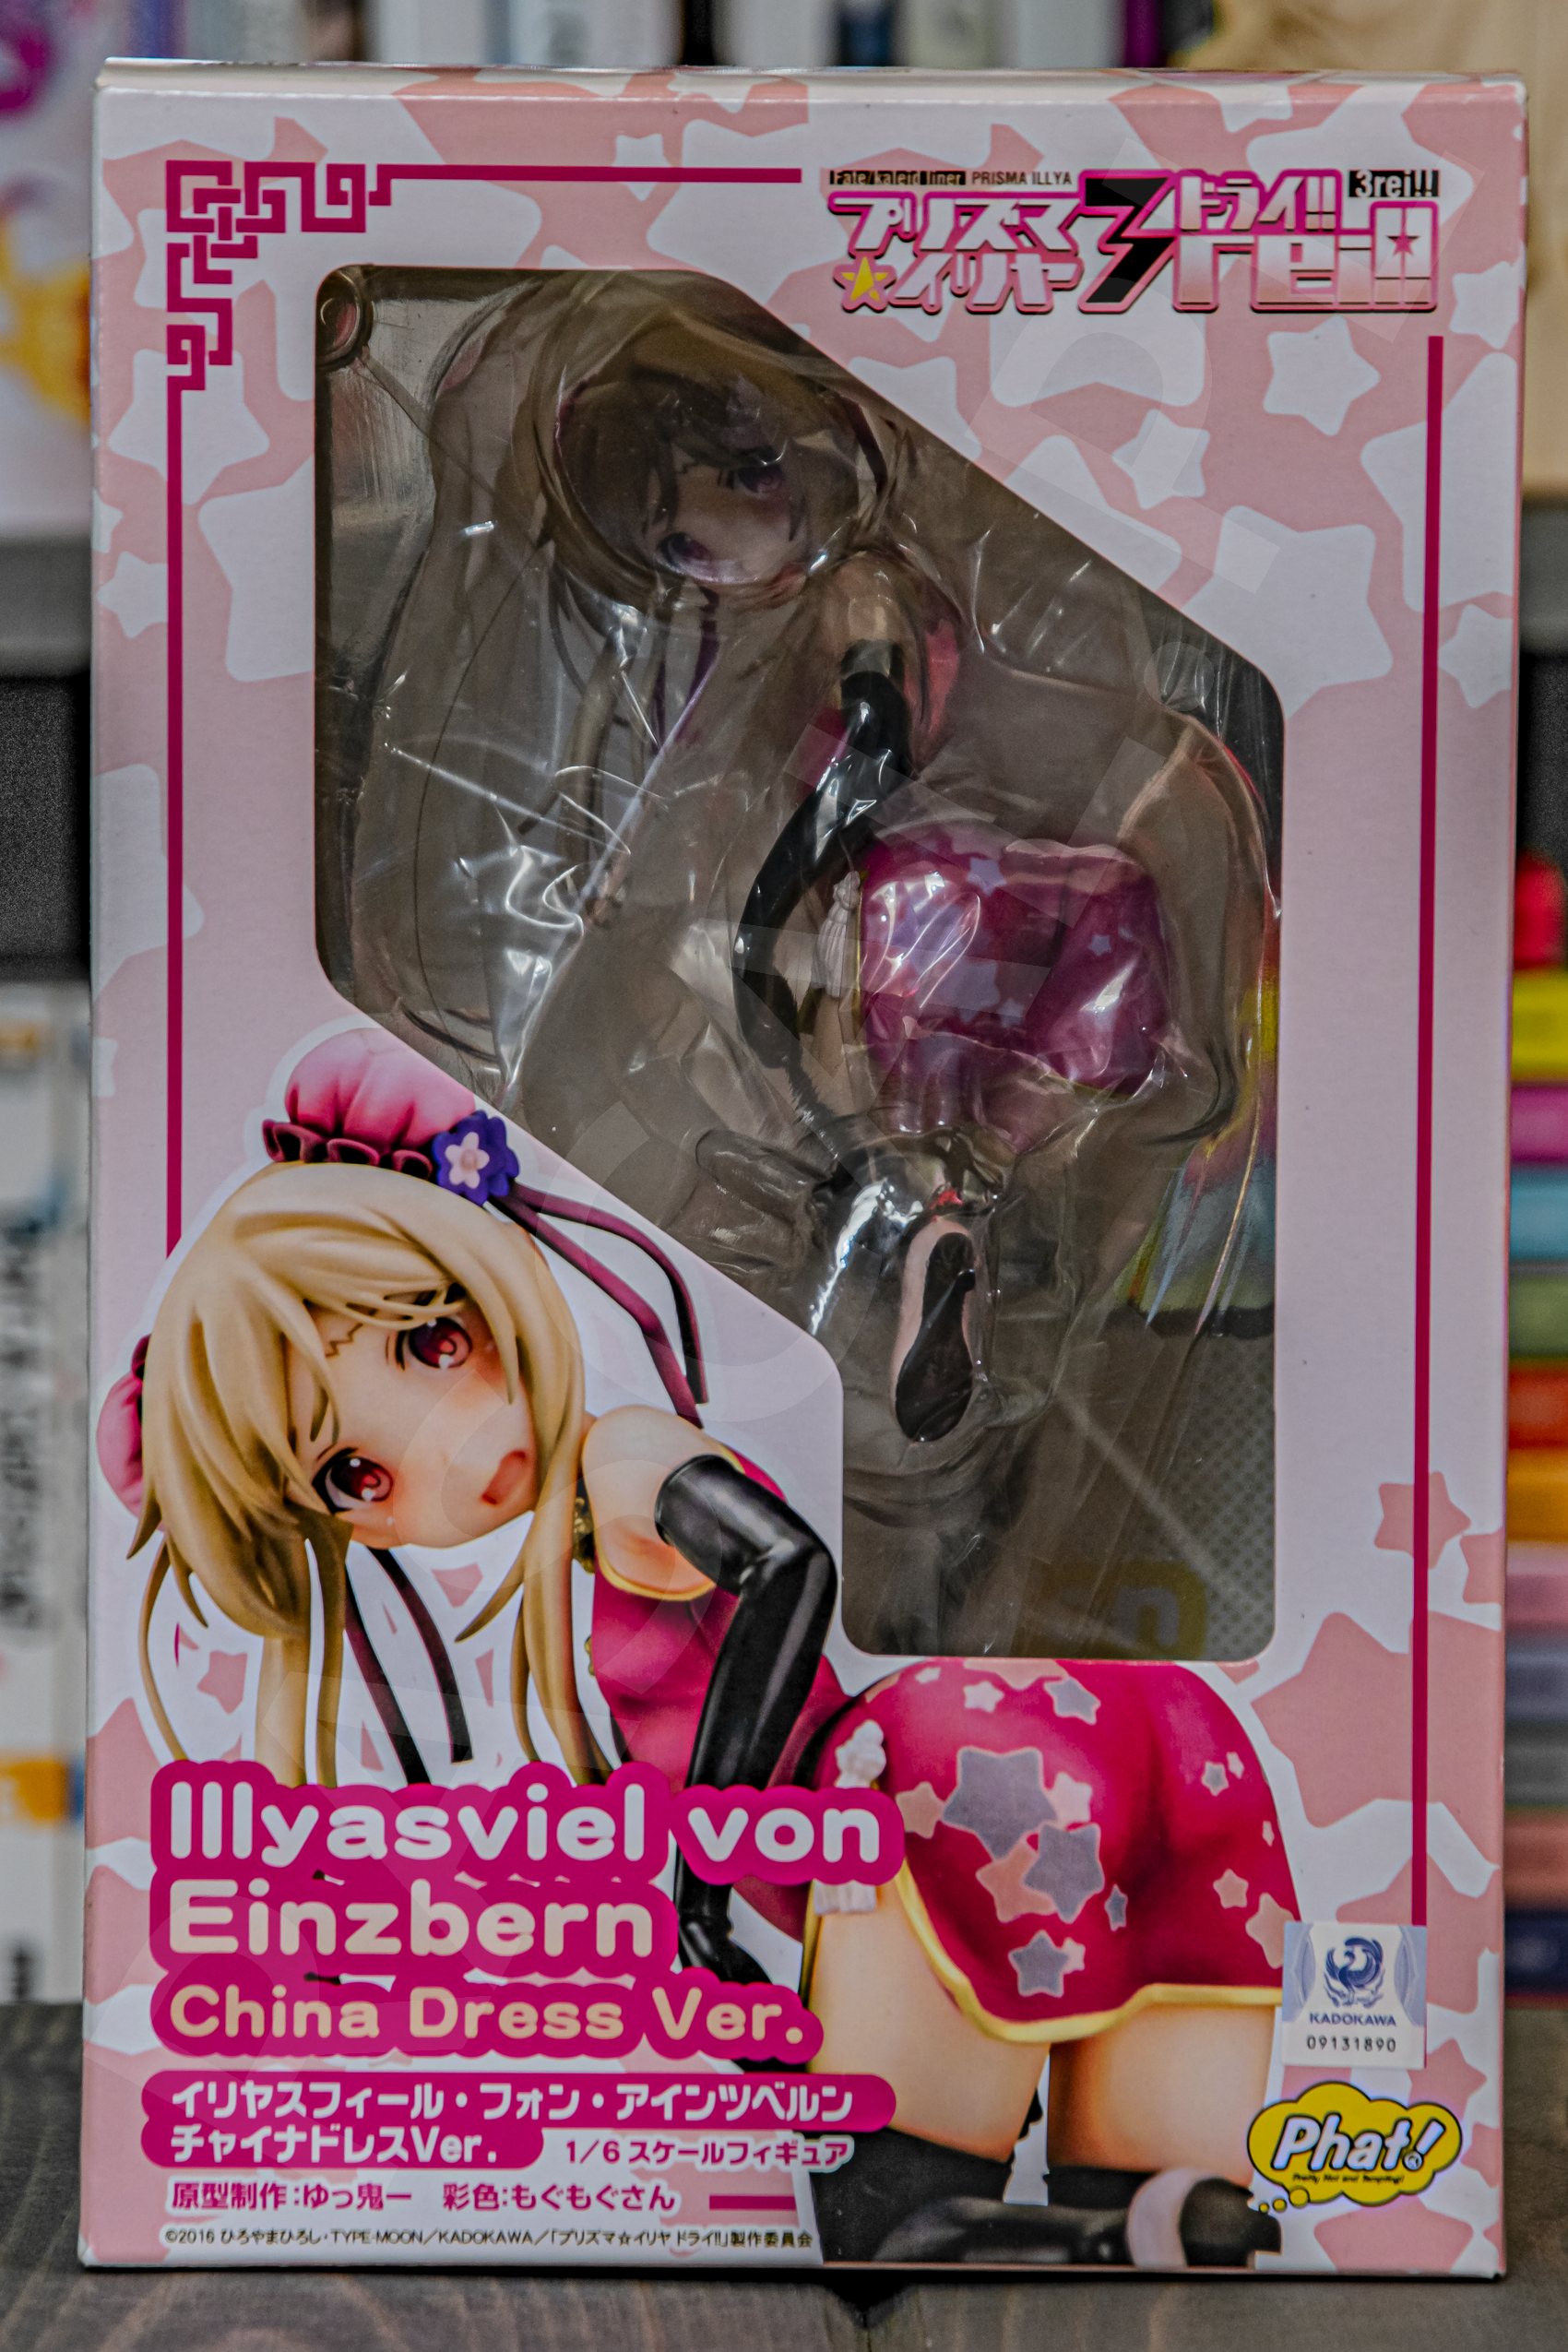 Illyasviel von Einzbern - 1/6 China Dress Ver. (Phat Company, 2019) - recenzja figurki - rascal.pl